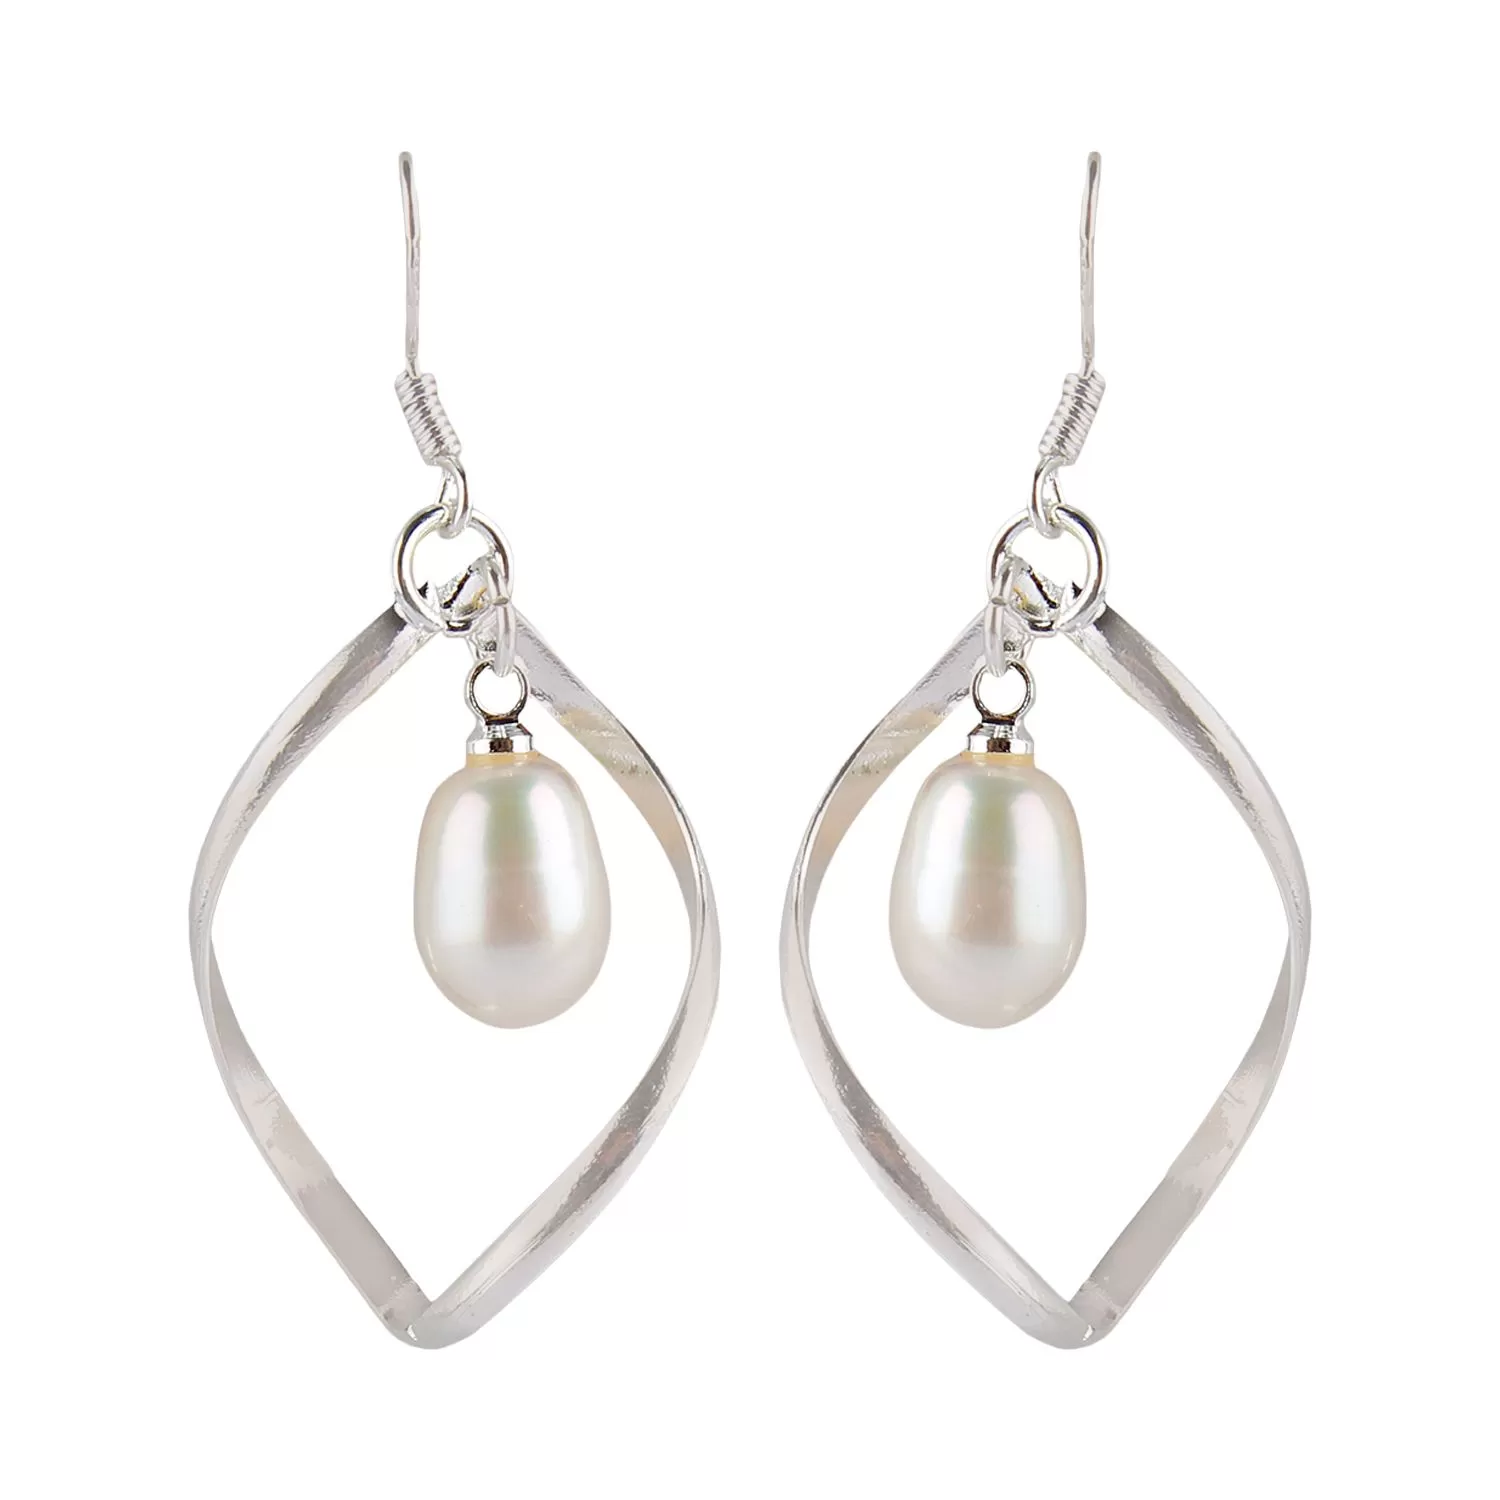 Stone pearl Dangler Earrings Art2, Color- White, For Women & Girls (Pack of 1 Pc.)